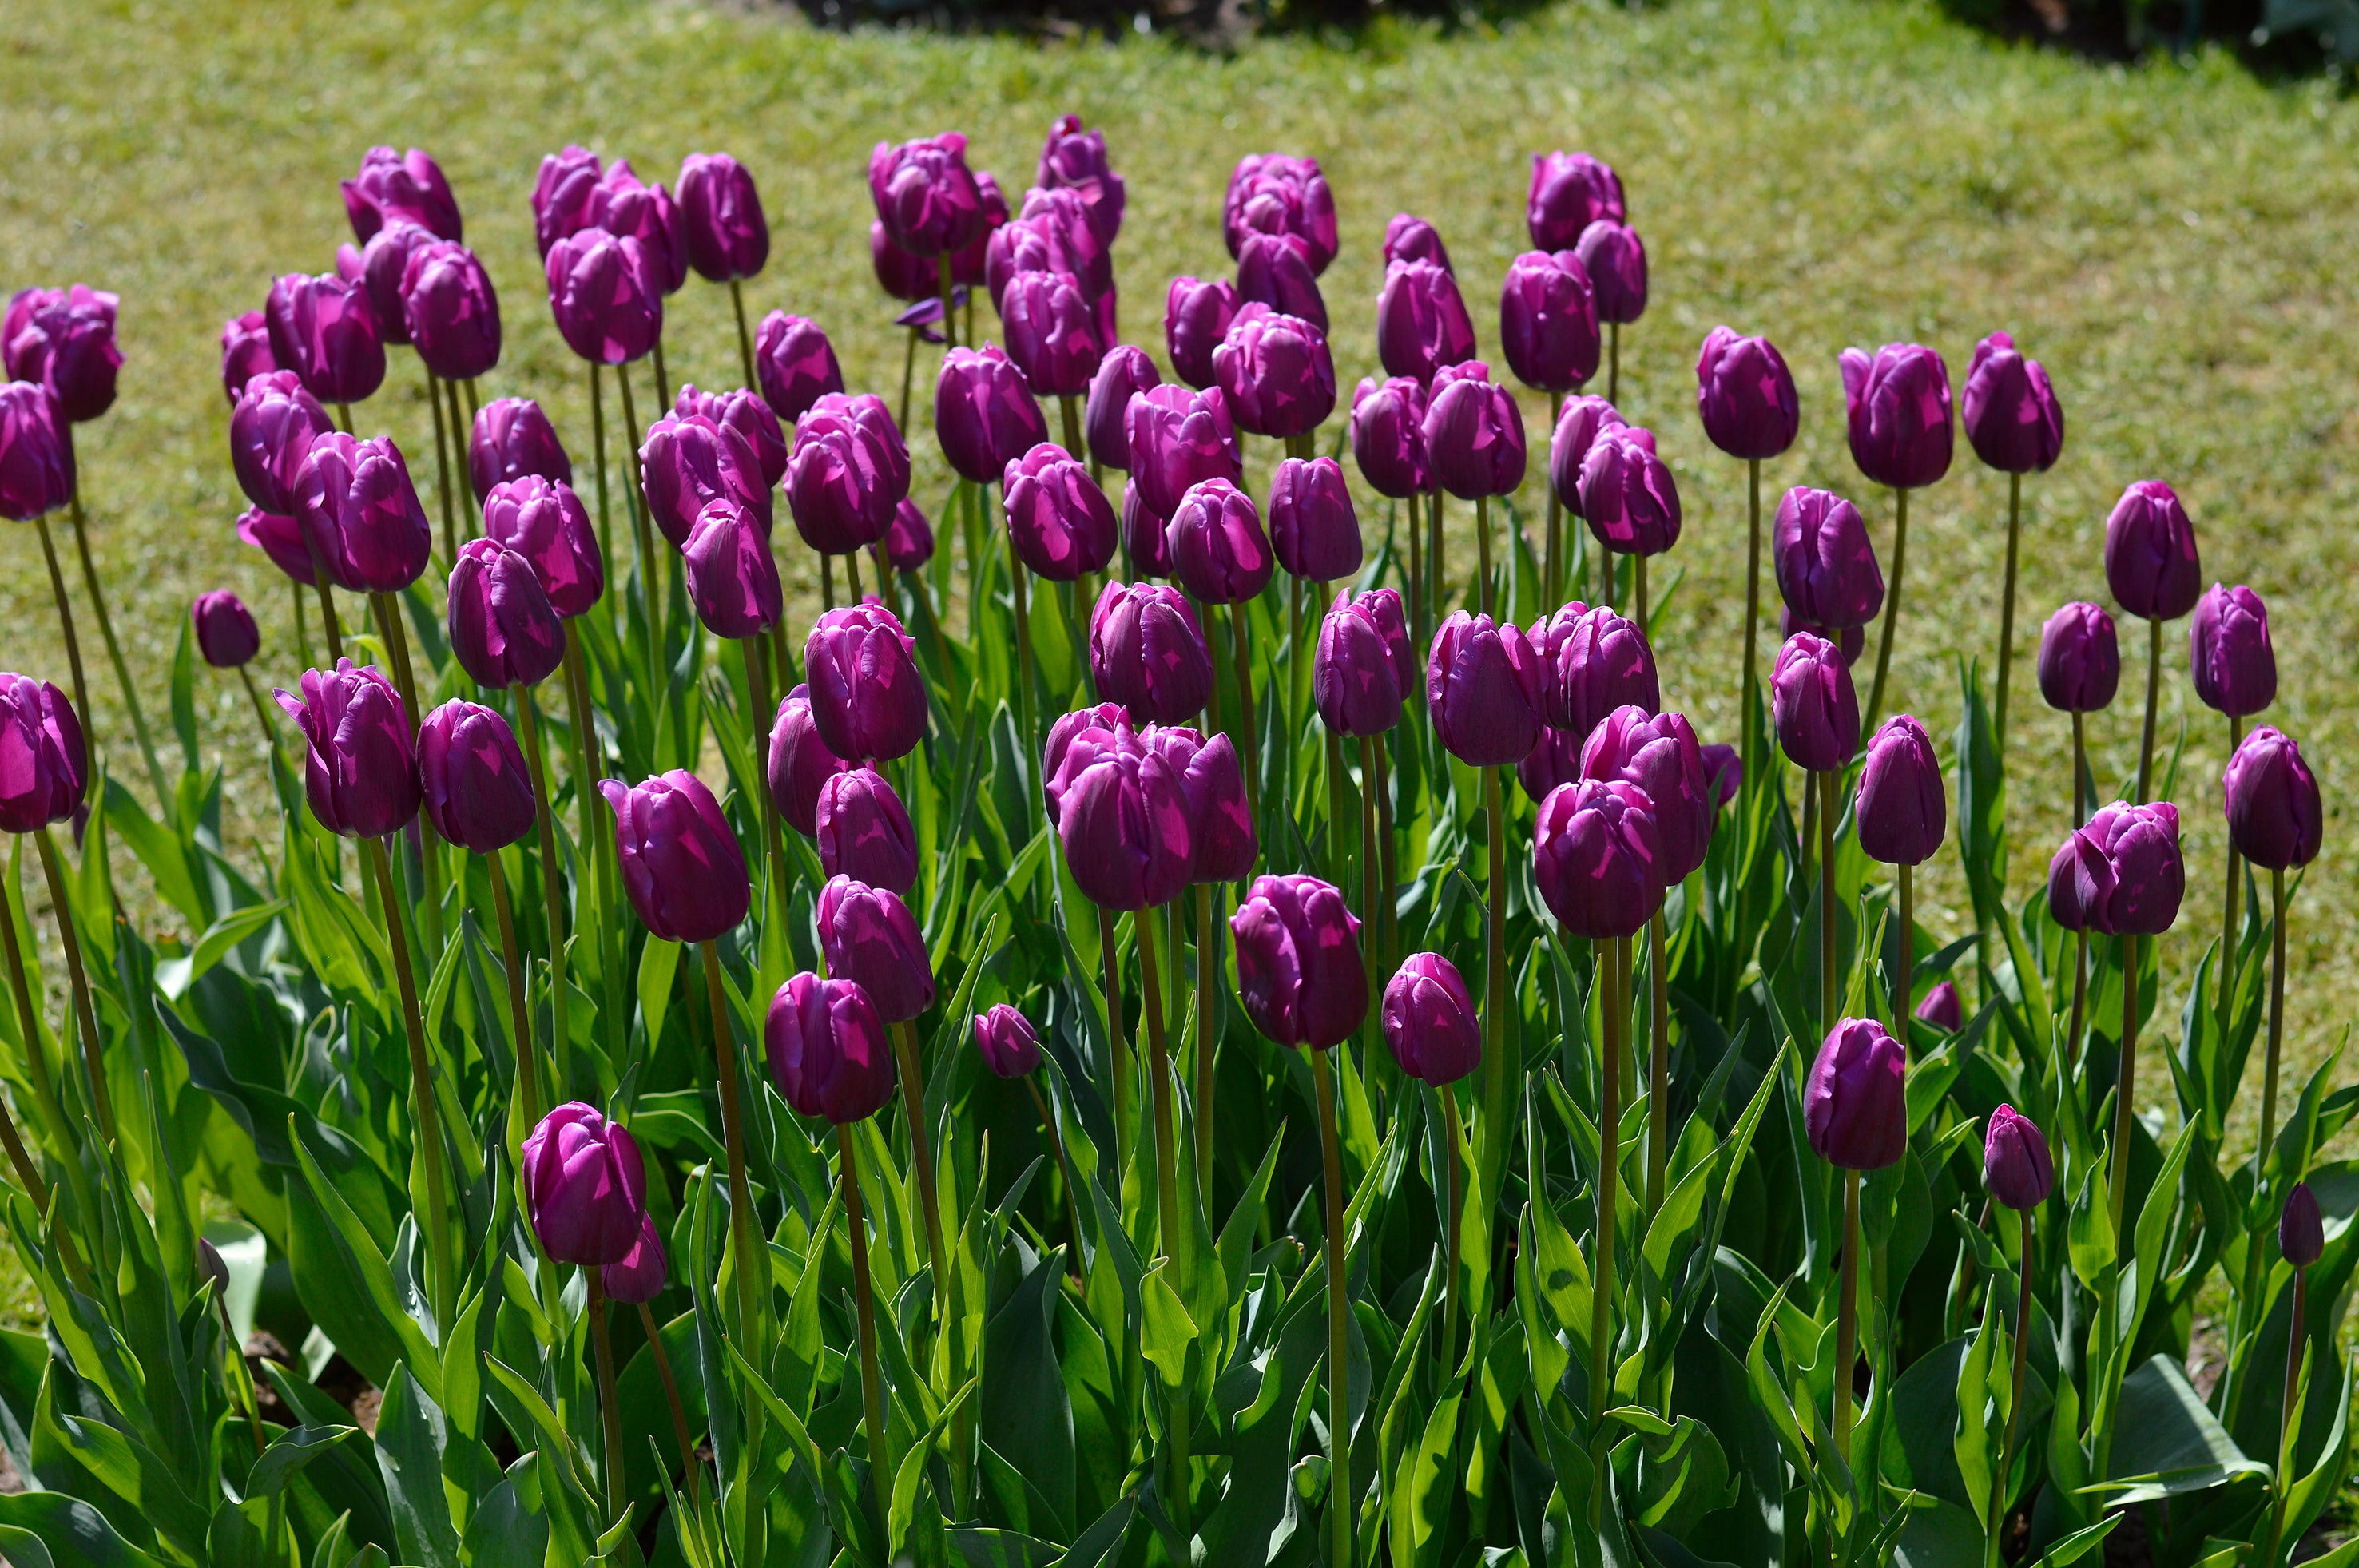 Tulip Purple Prince